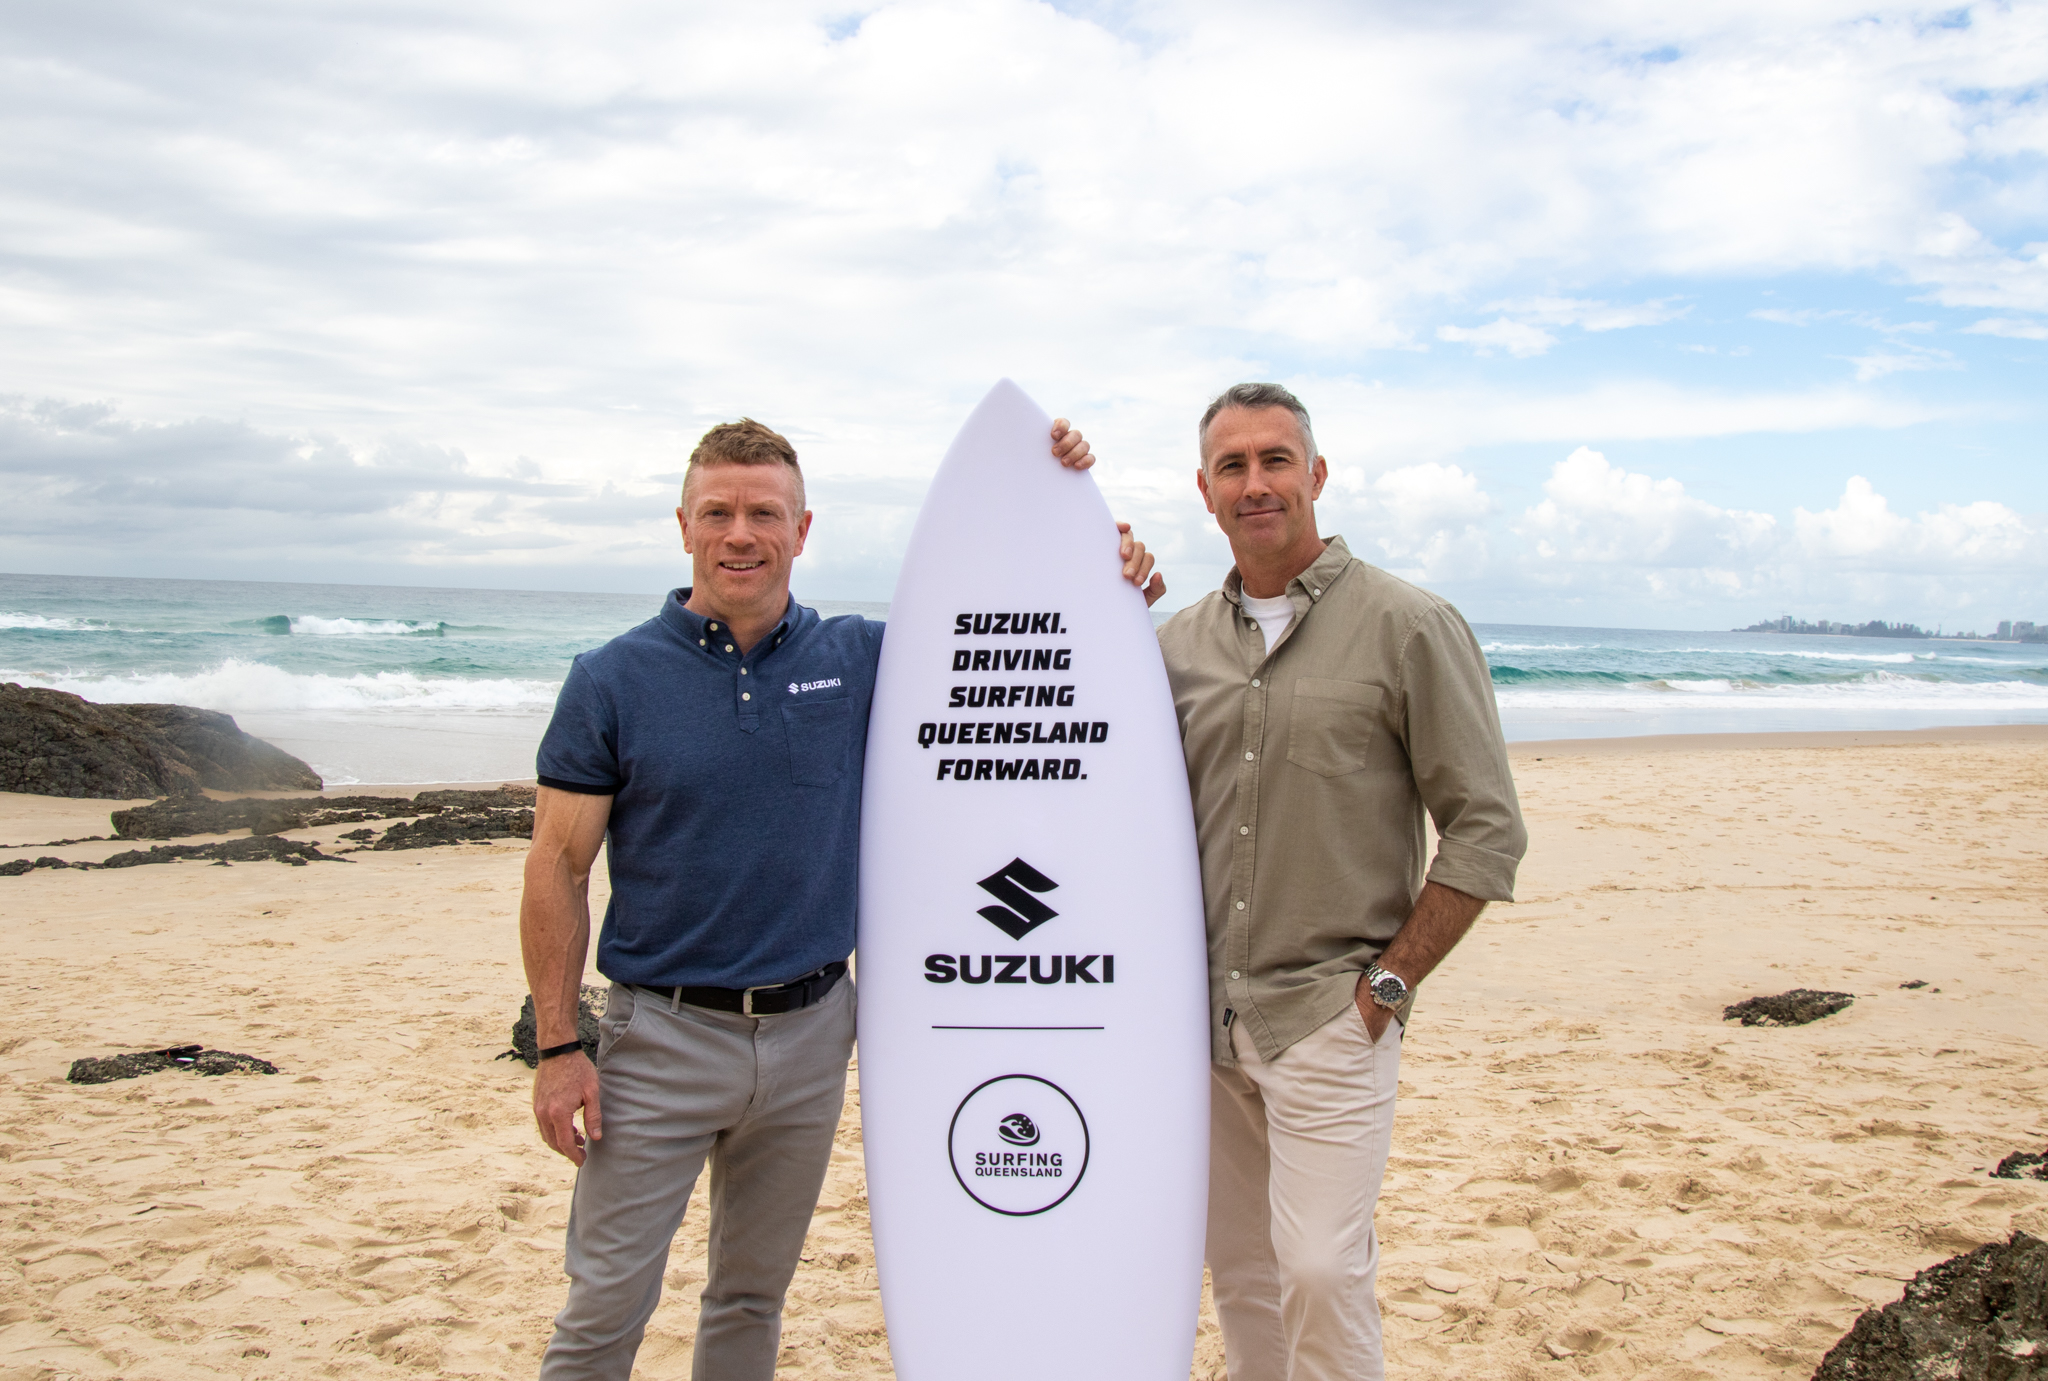 Suzuki Queensland Marketing Manager, Jake Tobin with Surfing Queensland Chief Executive Officer, Adam Yates